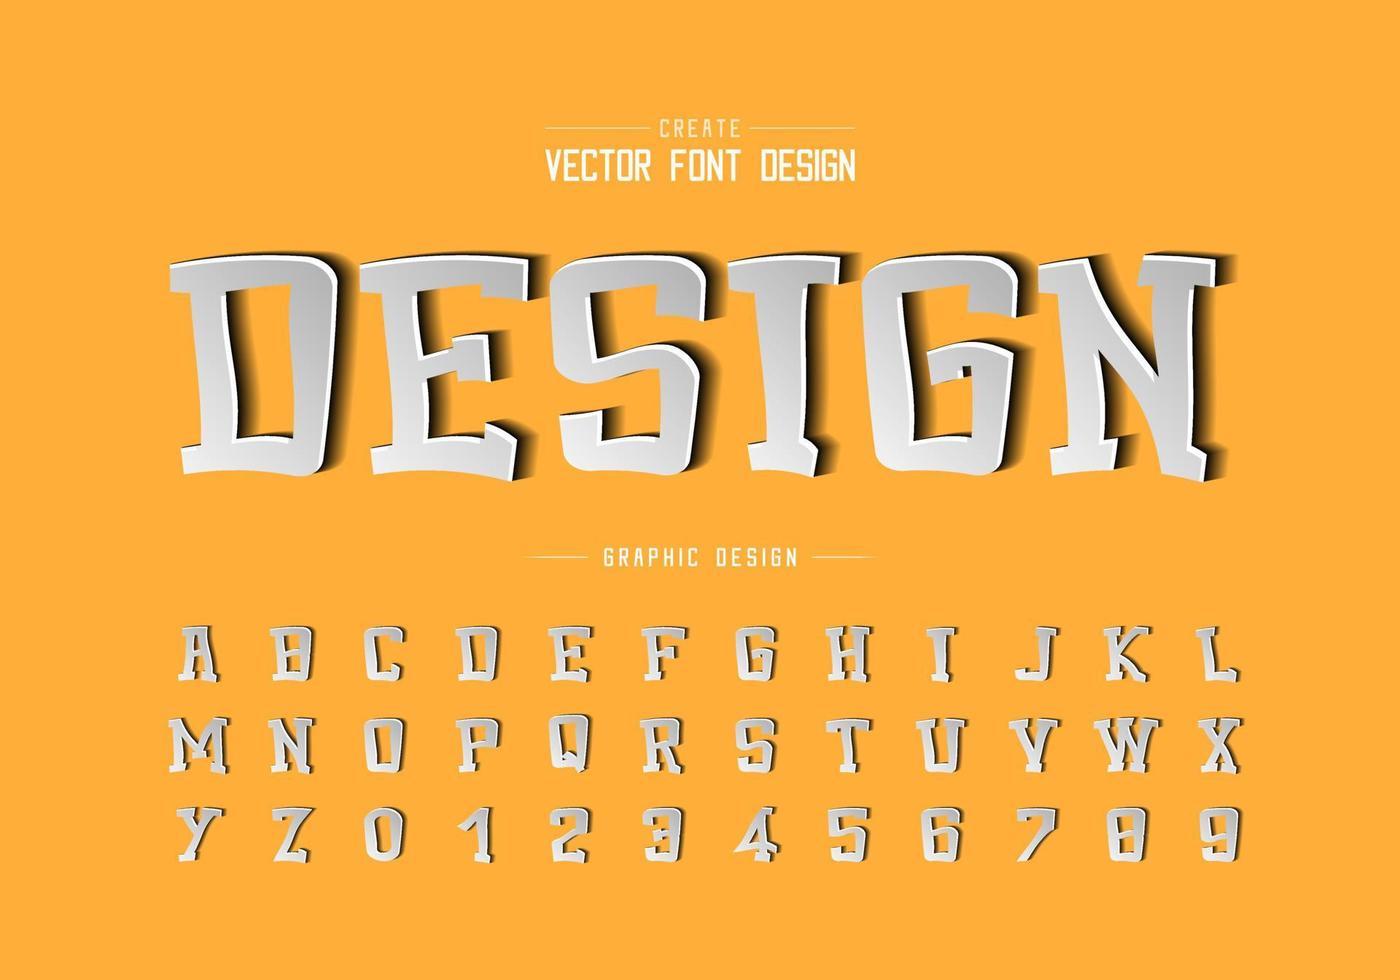 papier gesneden lettertype en cartoon alfabet vector, lettertype en nummer ontwerp, grafische tekst op achtergrond vector